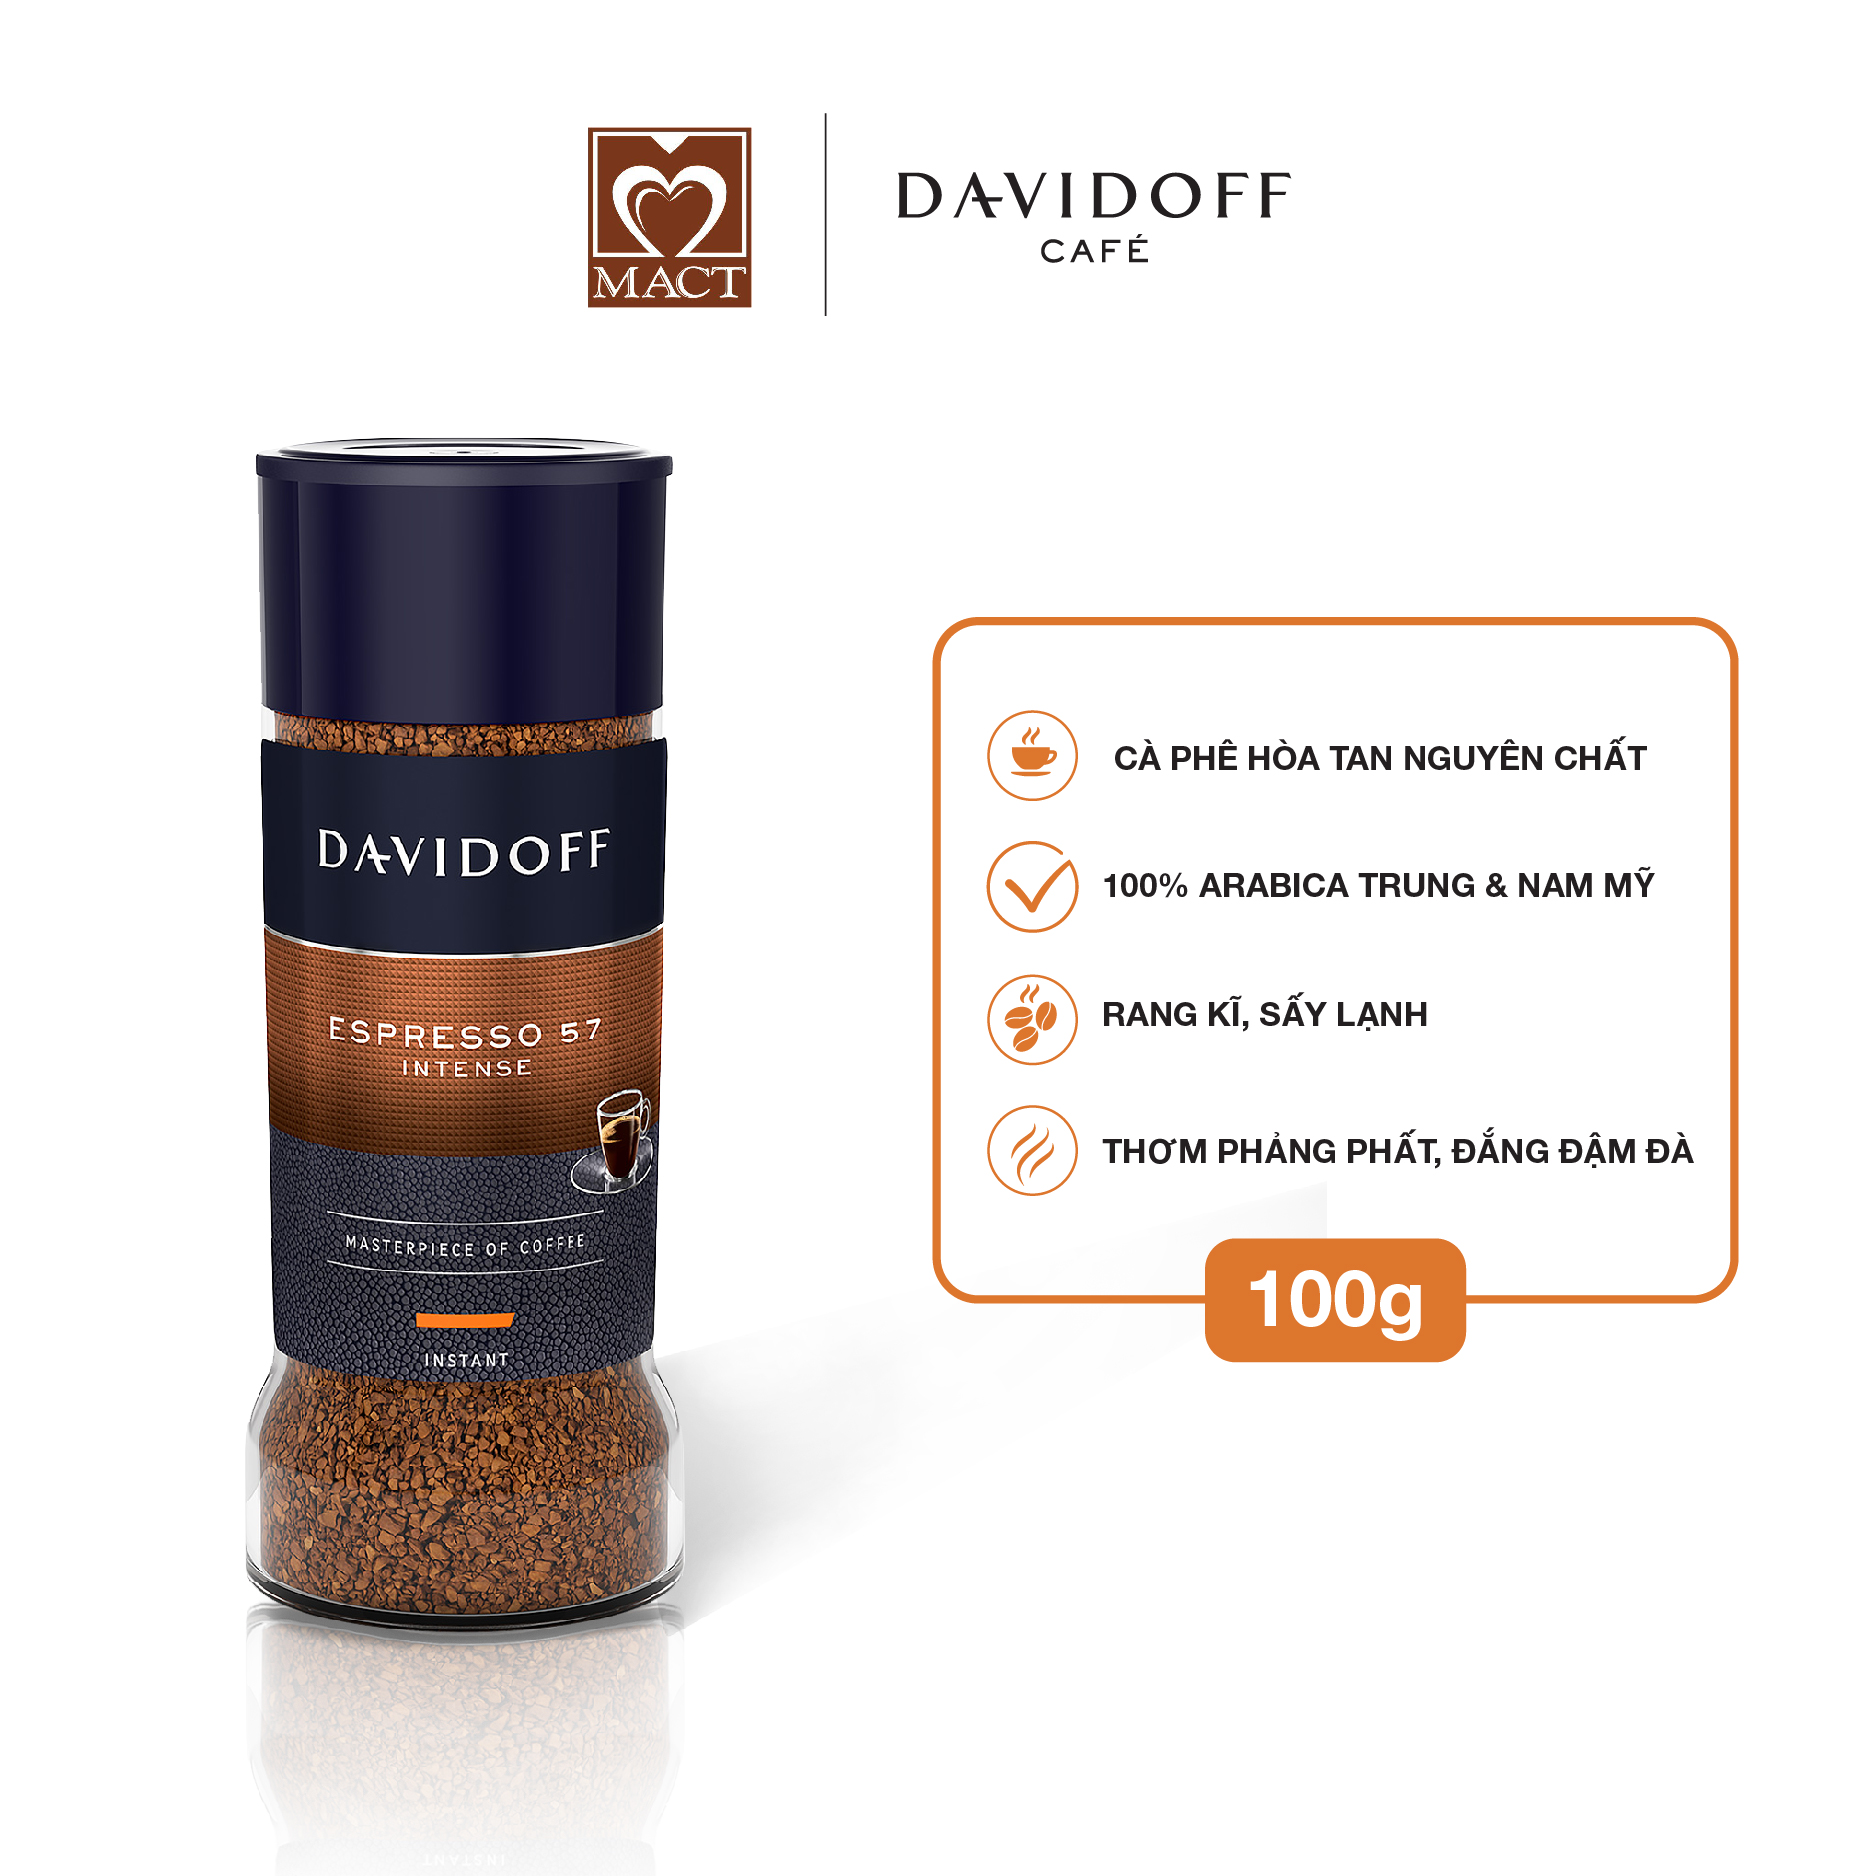 Cà phê hòa tan - Davidoff Café  Espresso 57 - 100g - Có quà tặng kèm